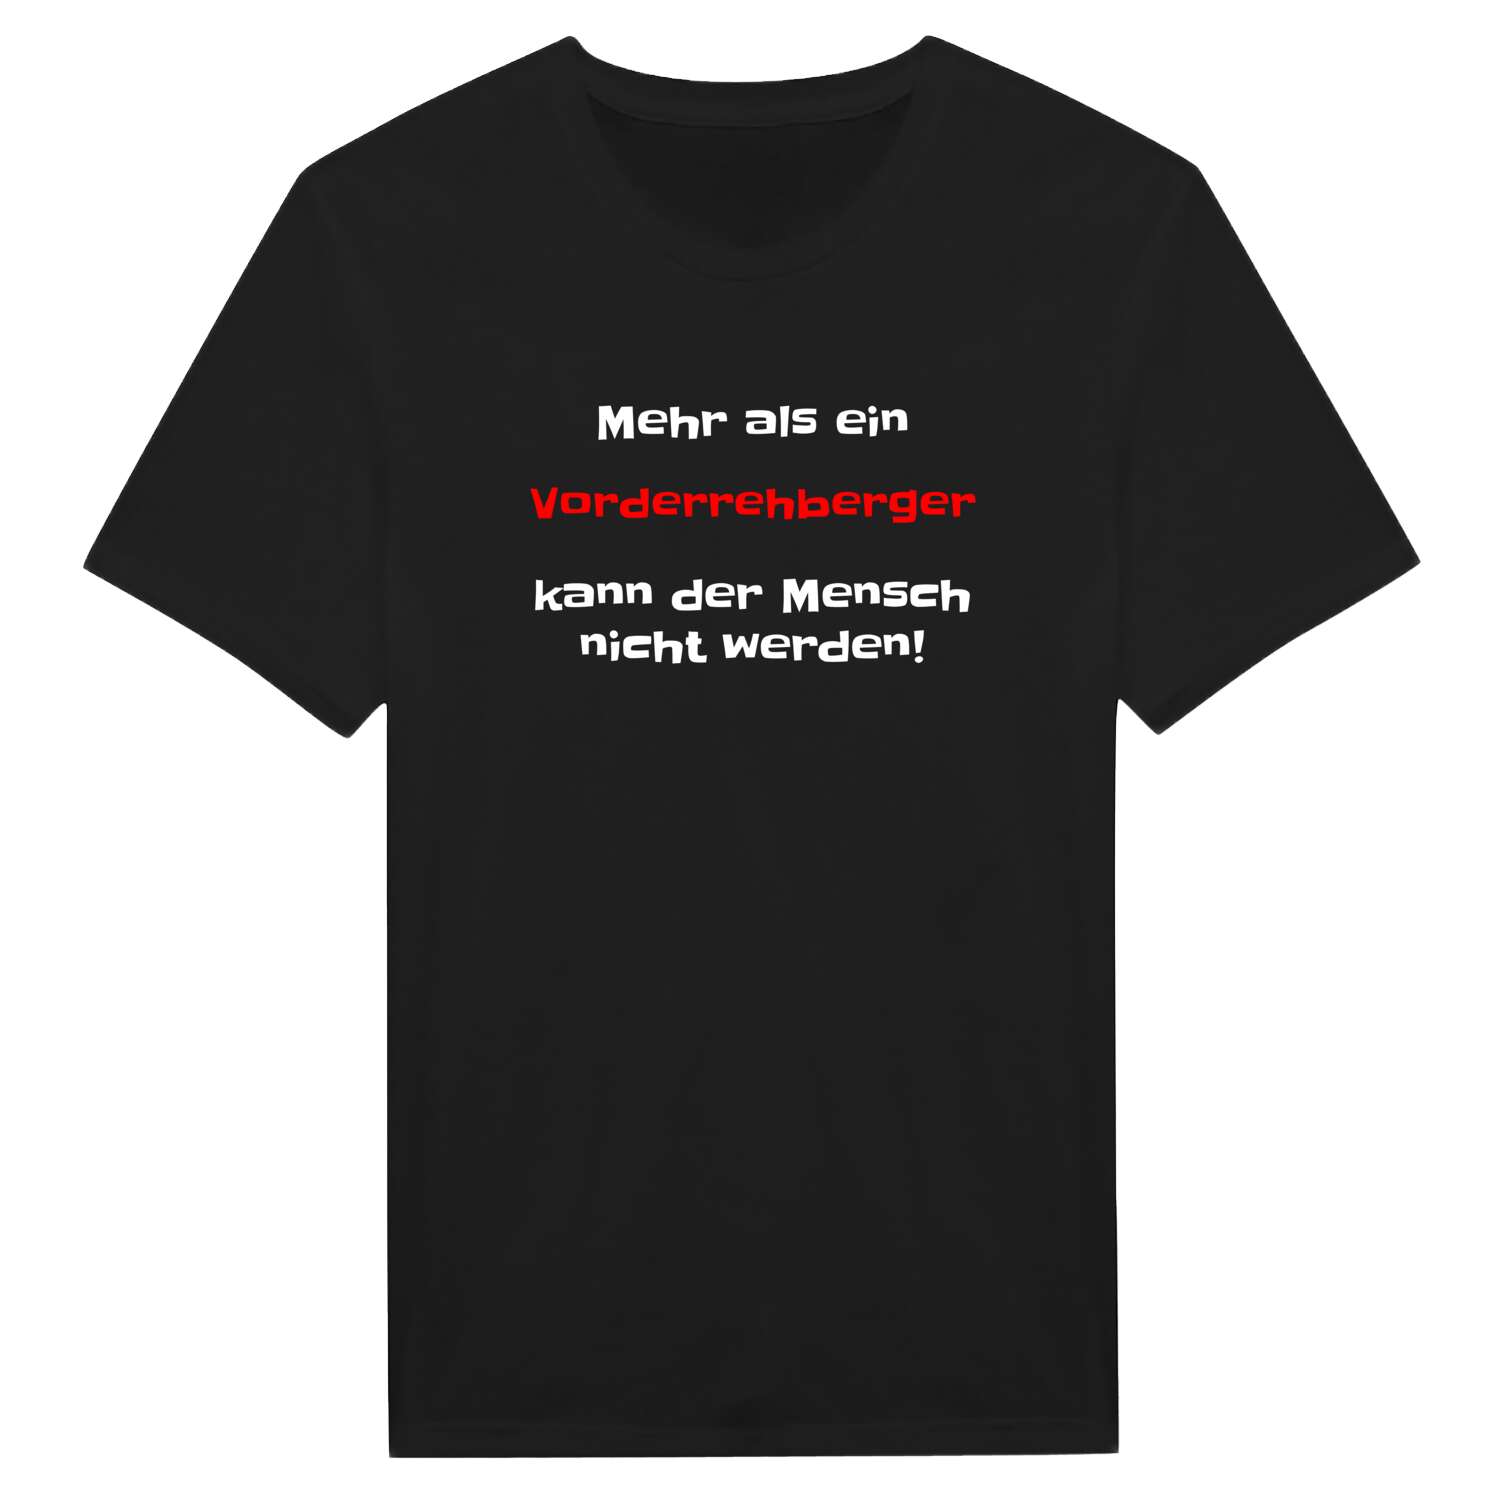 Vorderrehberg T-Shirt »Mehr als ein«